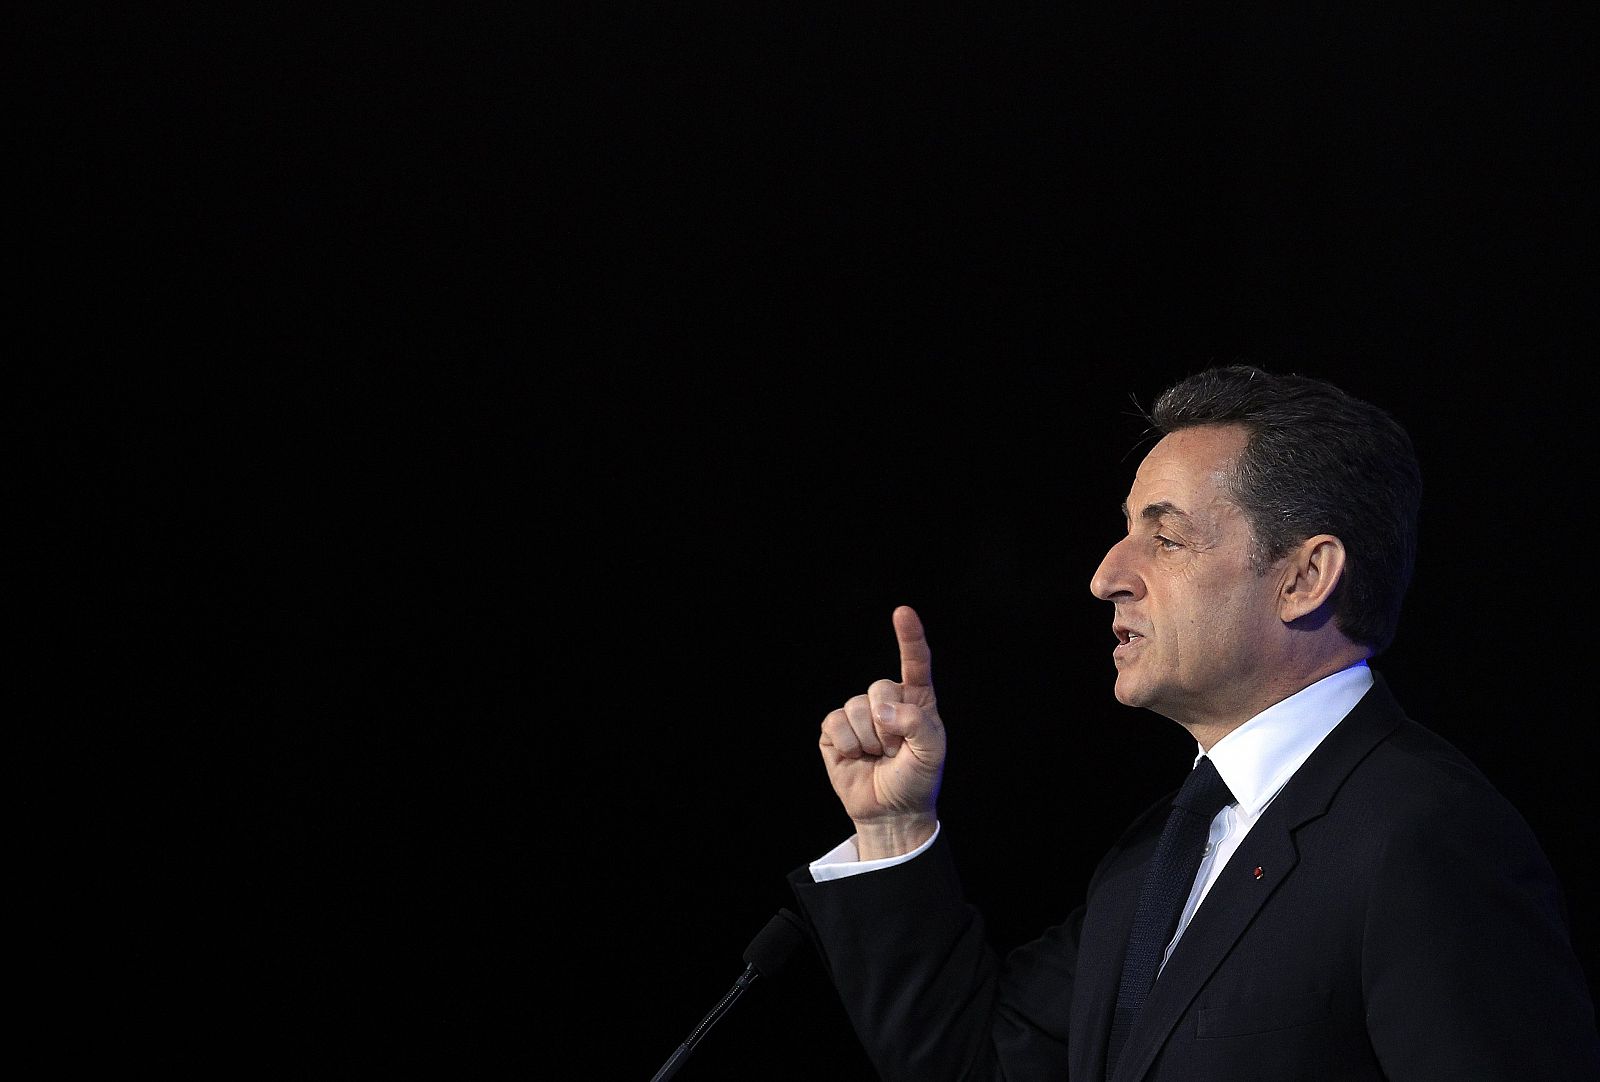 El presidente francés, Nicolas Sarkozy, durante una interevnción en Marsella